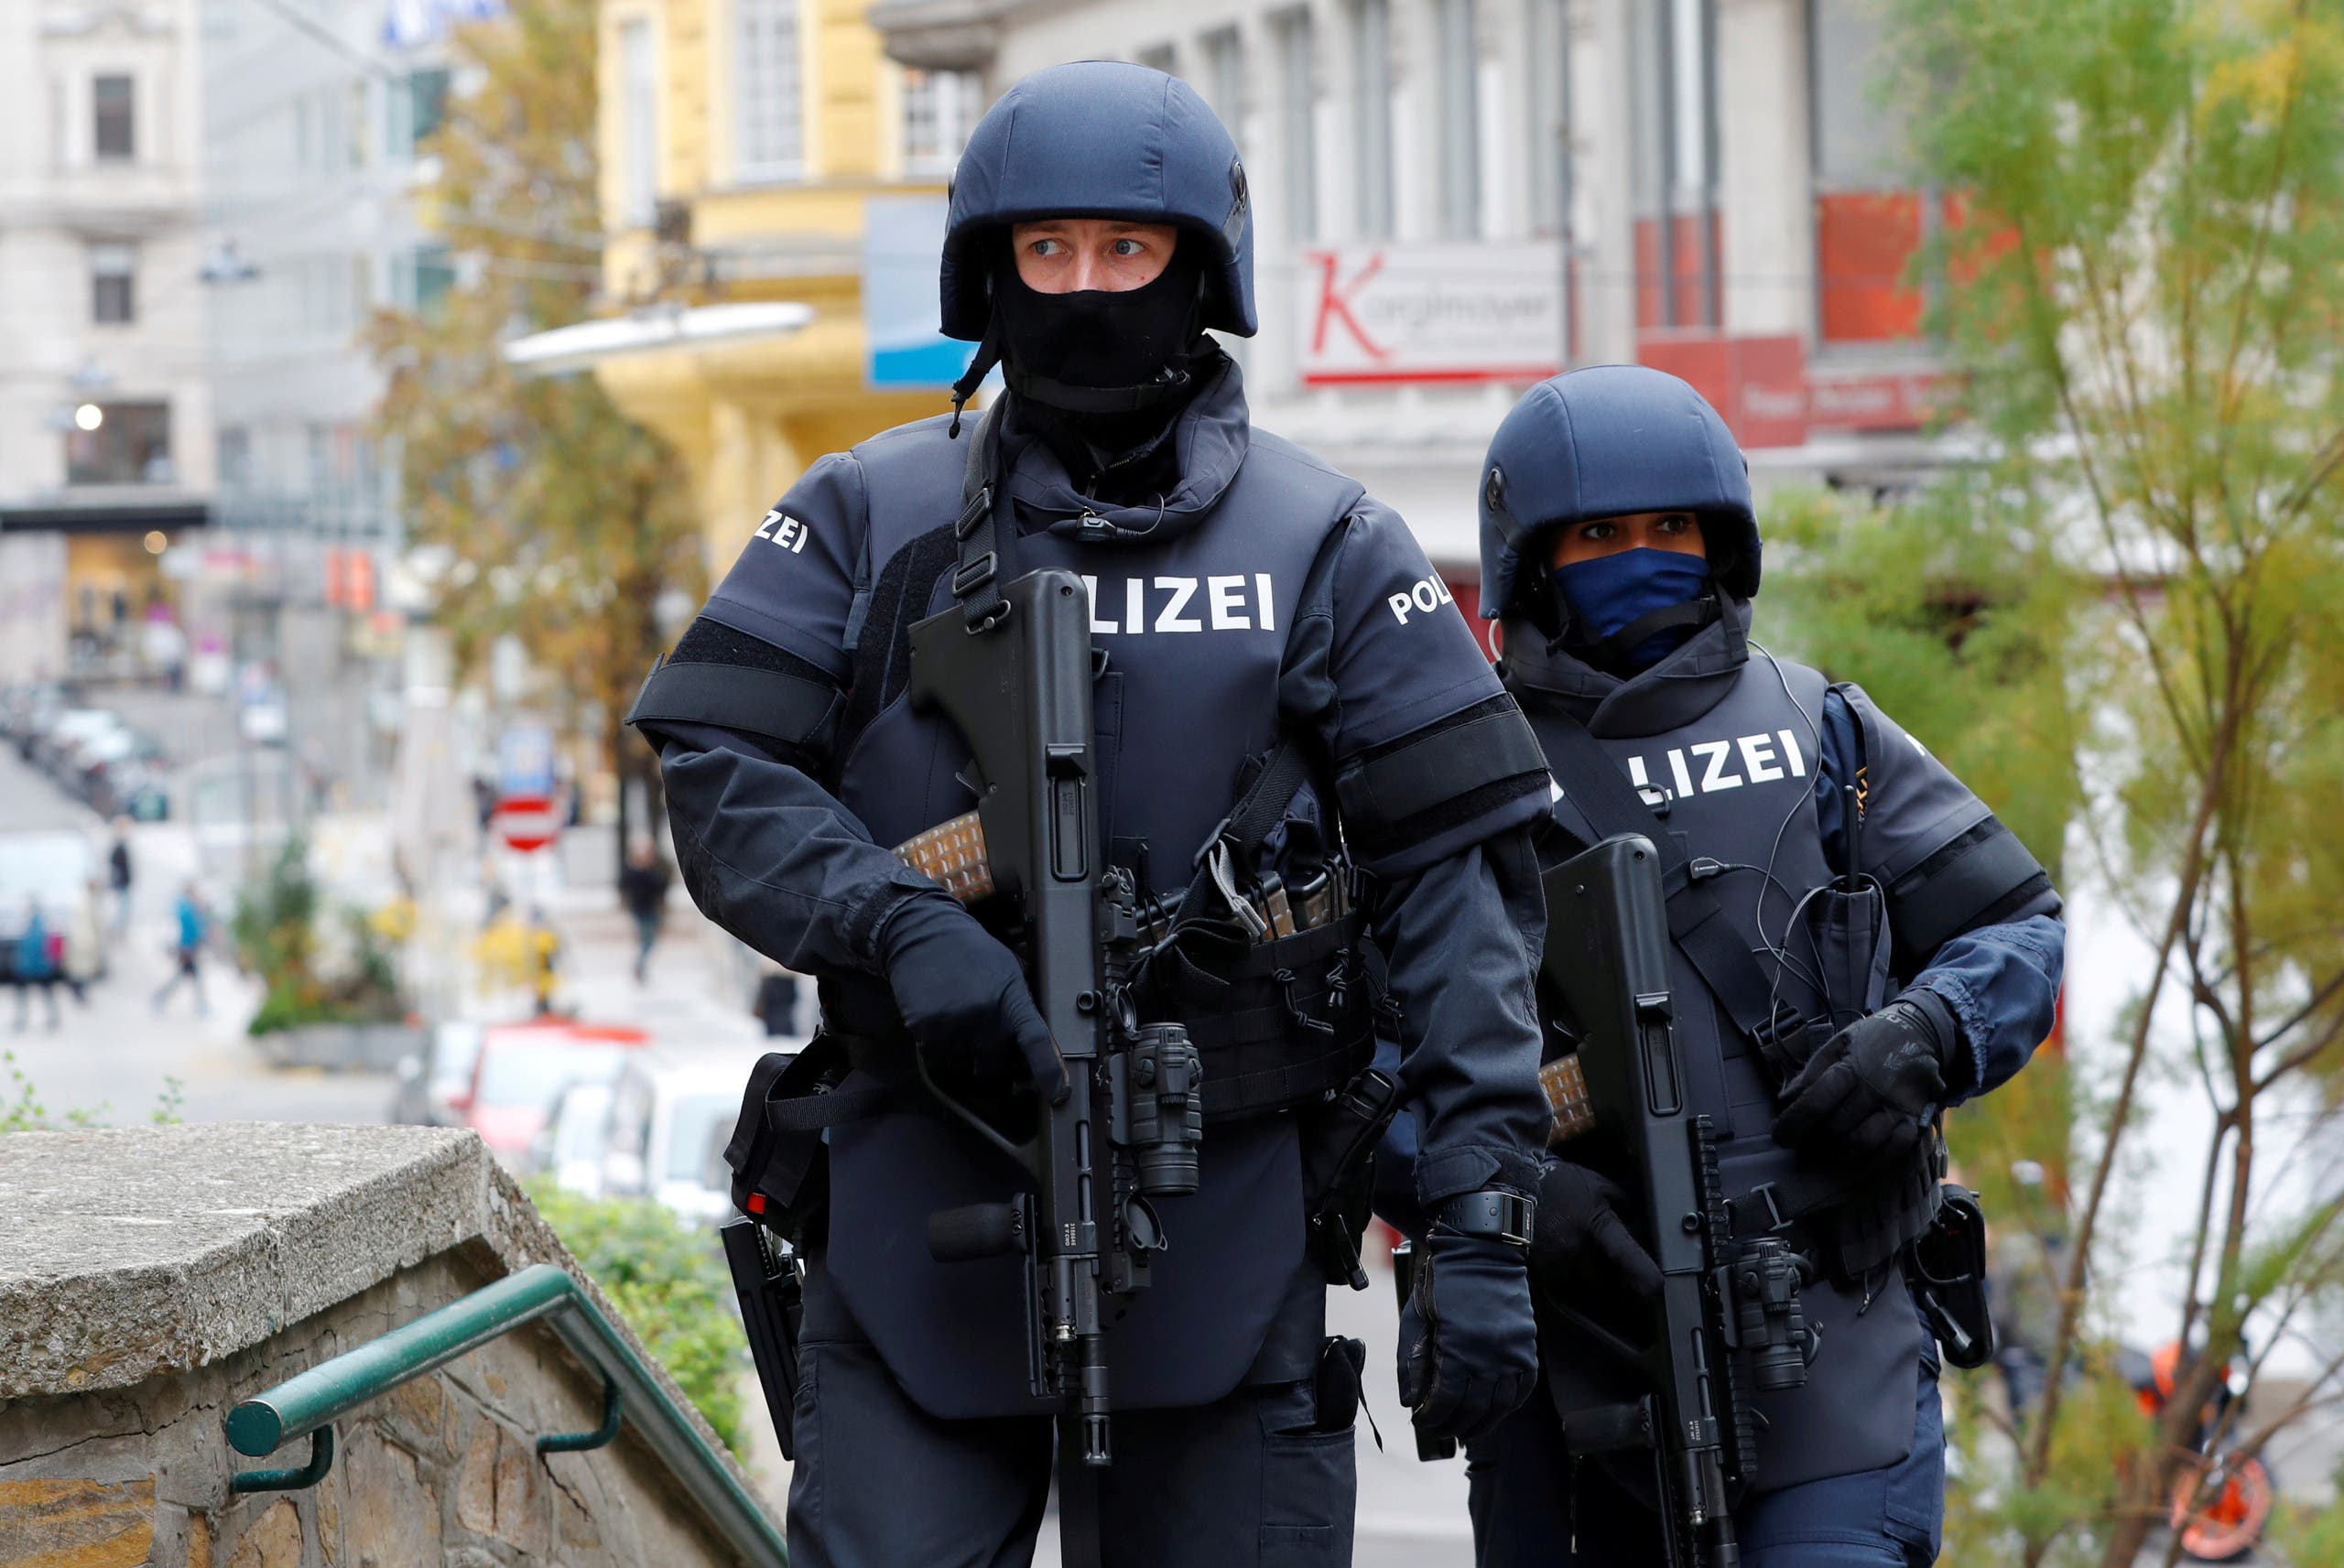 الشرطة في مكان وزقوع الهجوم في فيينا الأسوبع الماضي